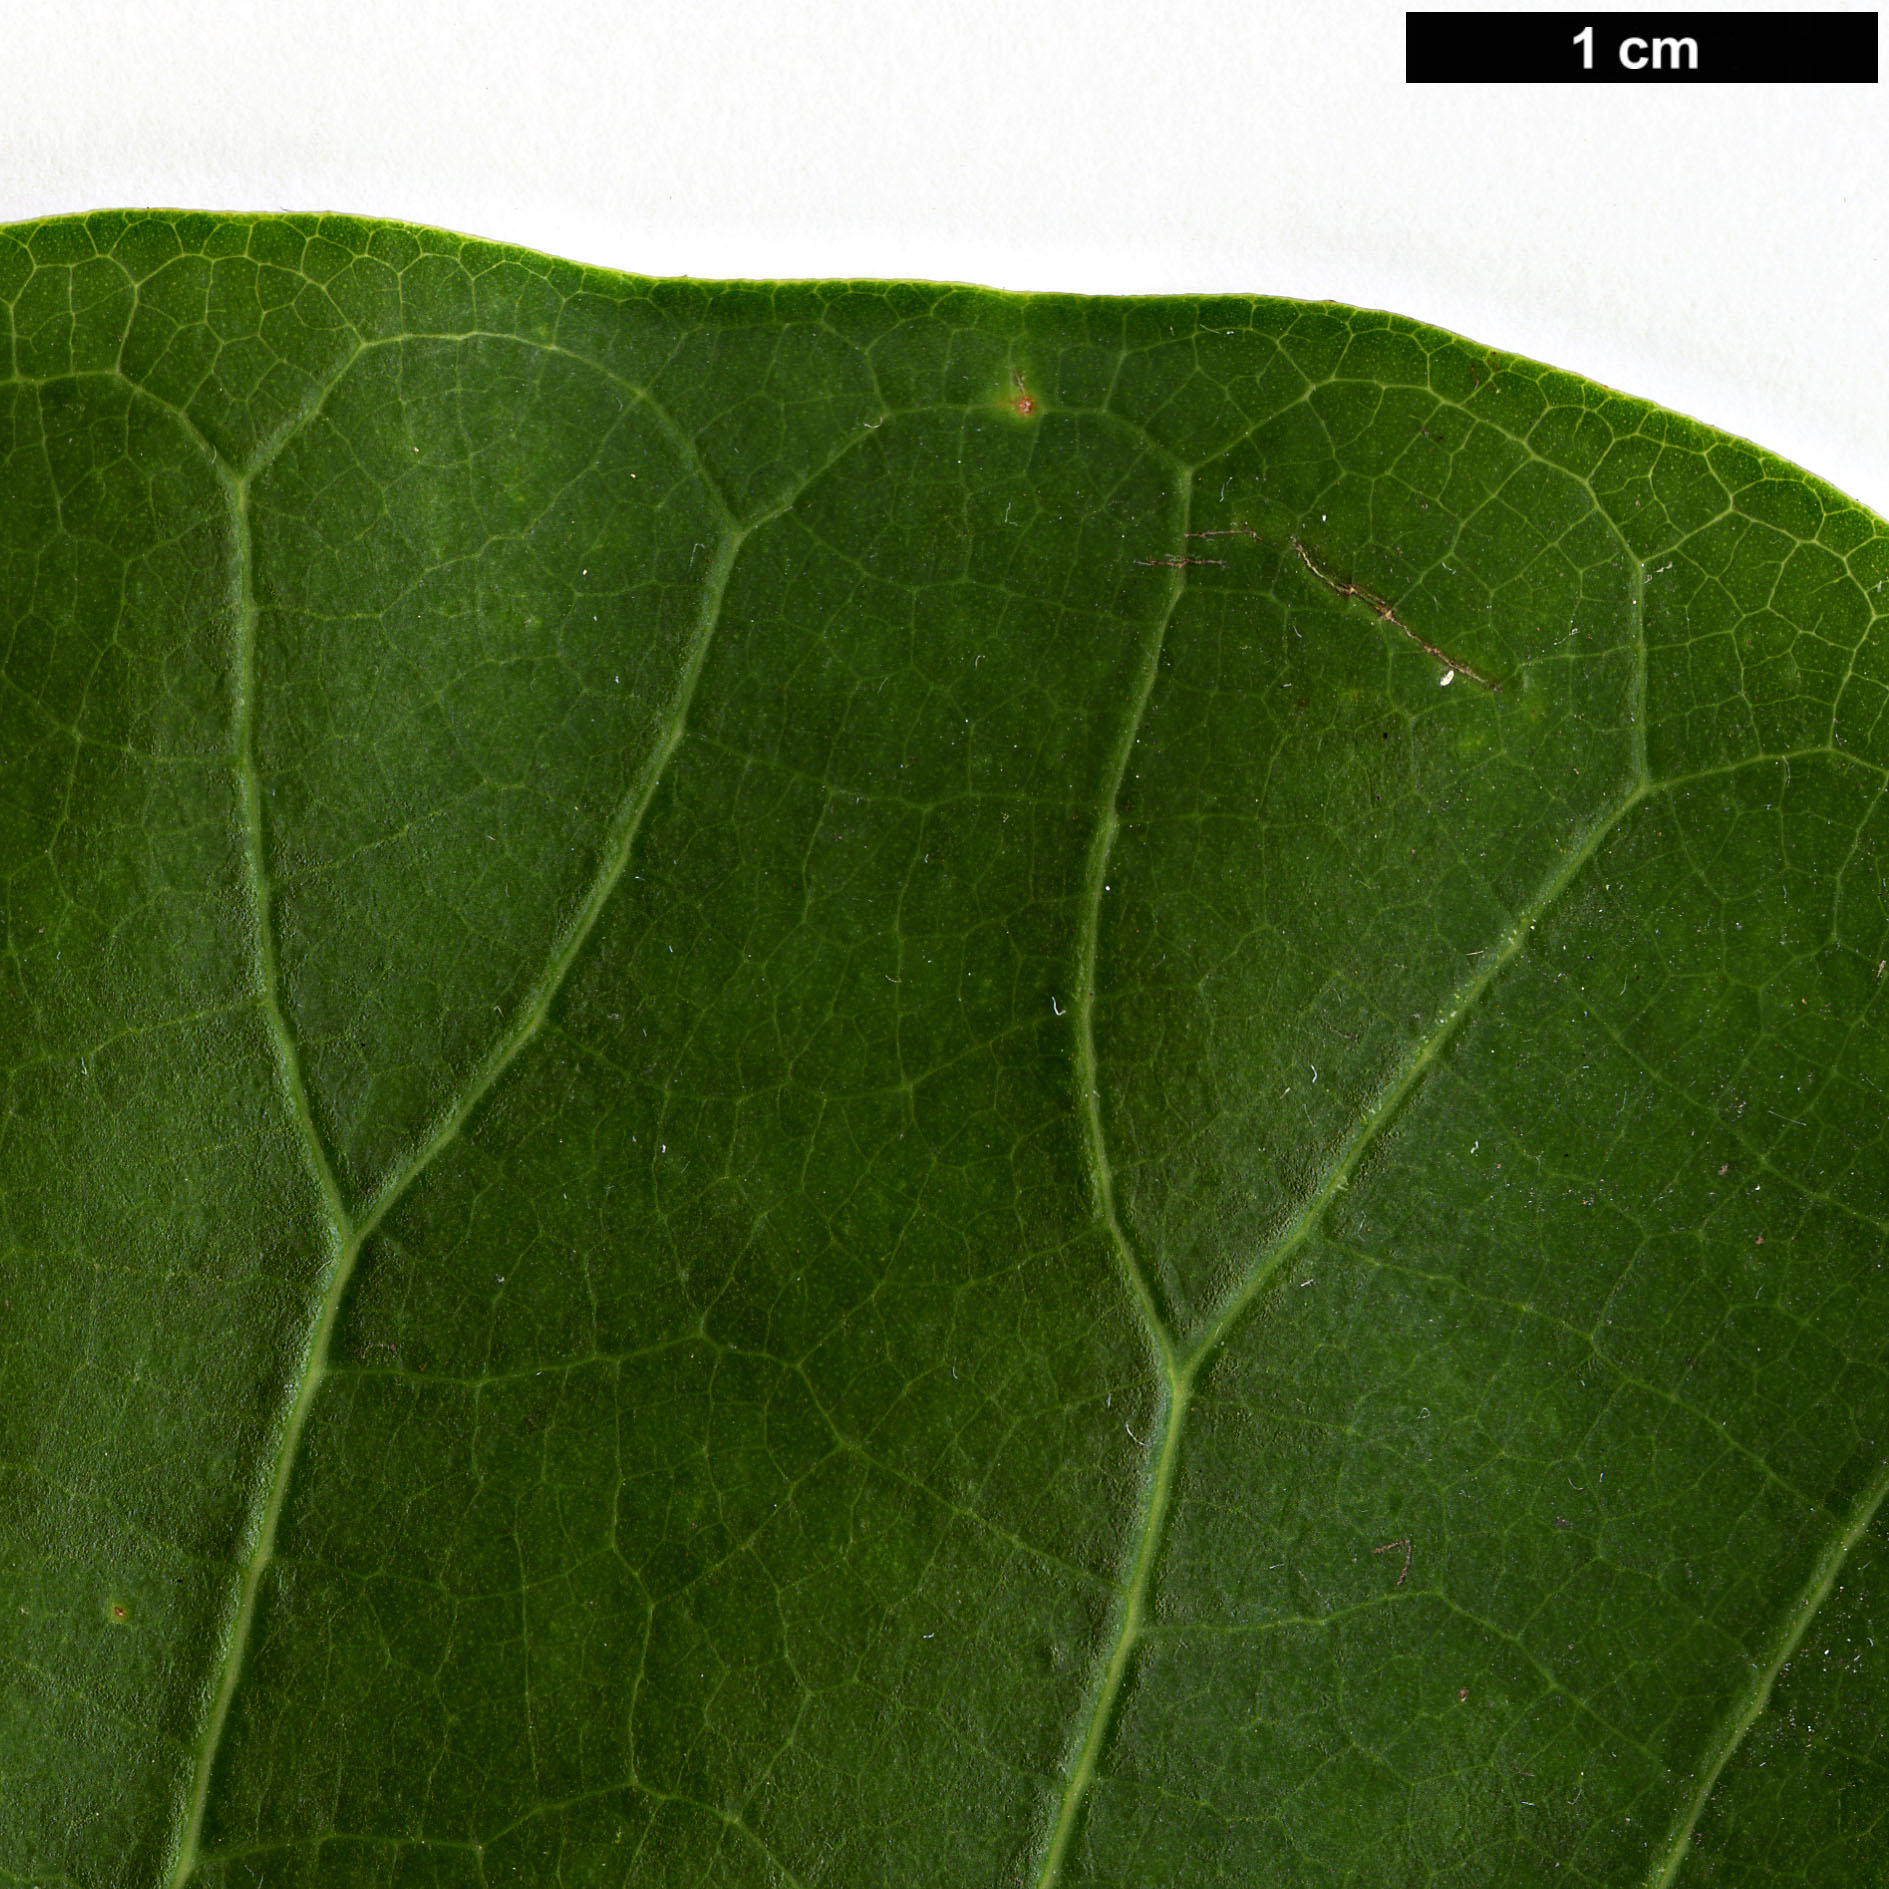 High resolution image: Family: Magnoliaceae - Genus: Magnolia - Taxon: officinalis - SpeciesSub: var. biloba